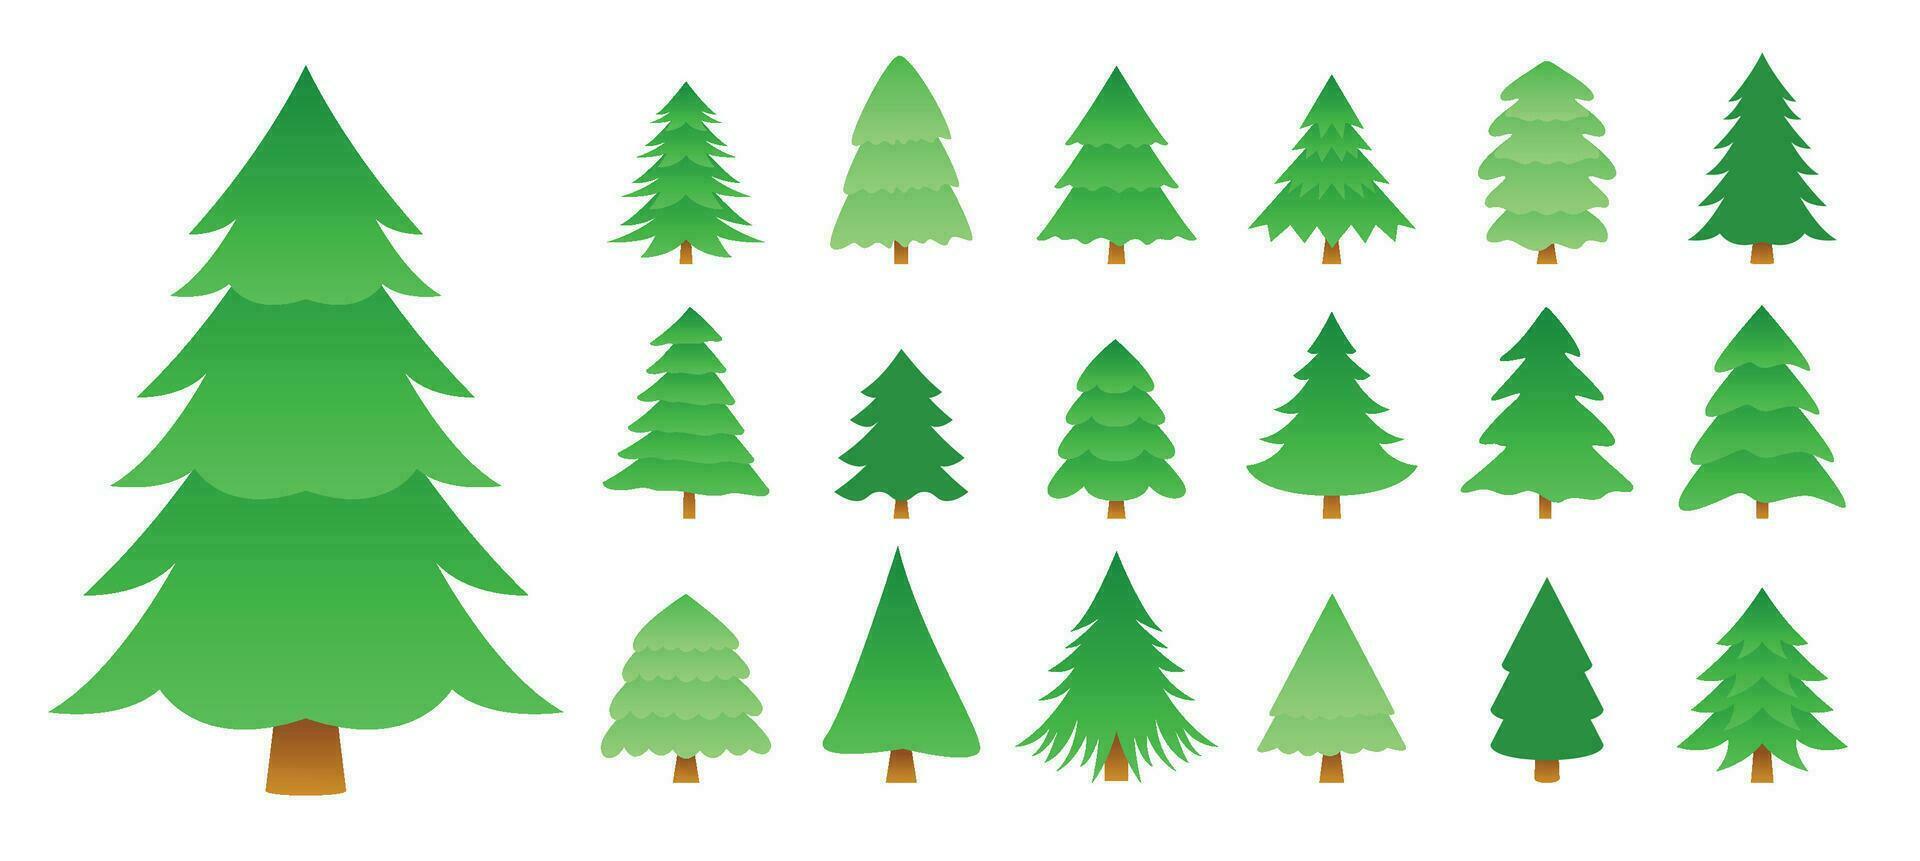 indelingen van verschillend Kerstmis bomen ontwerp in verzameling vector